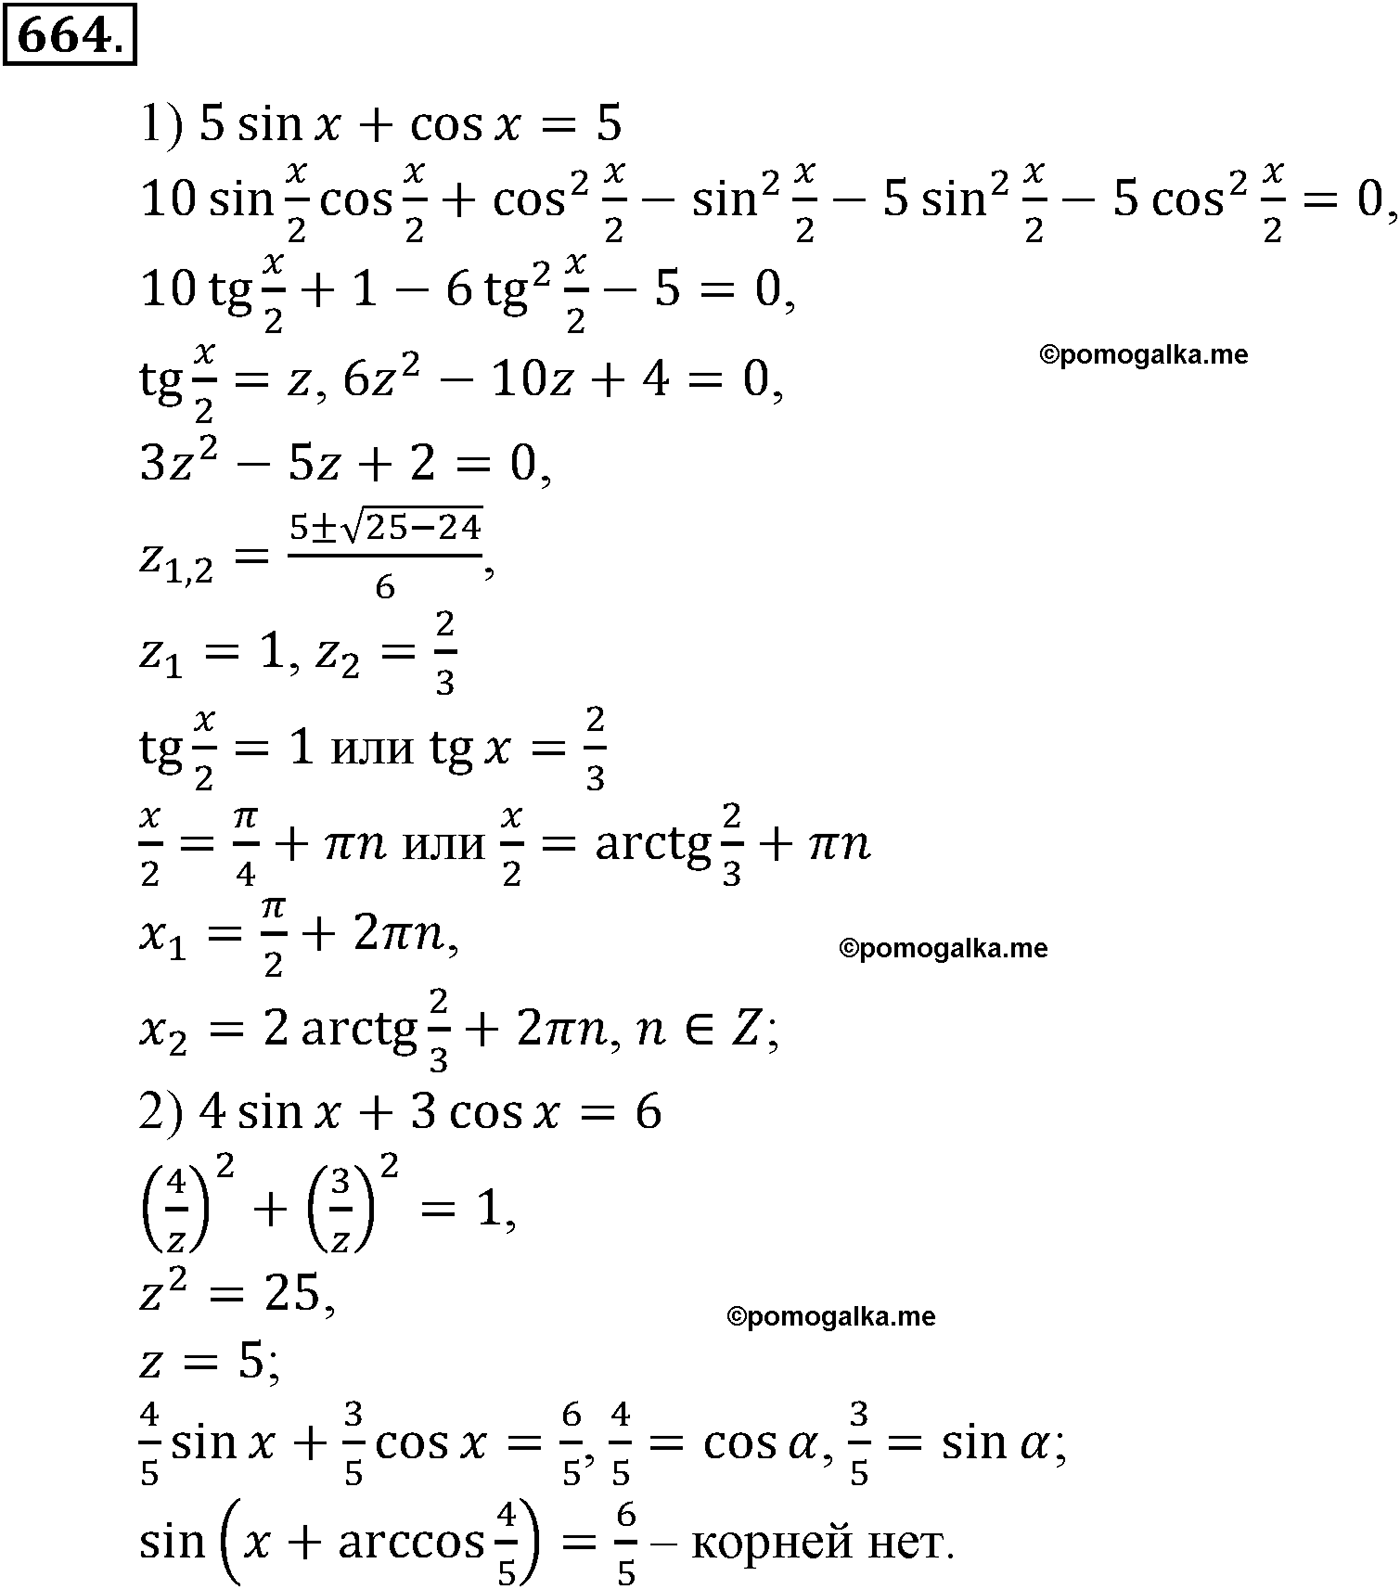 разбор задачи №664 по алгебре за 10-11 класс из учебника Алимова, Колягина